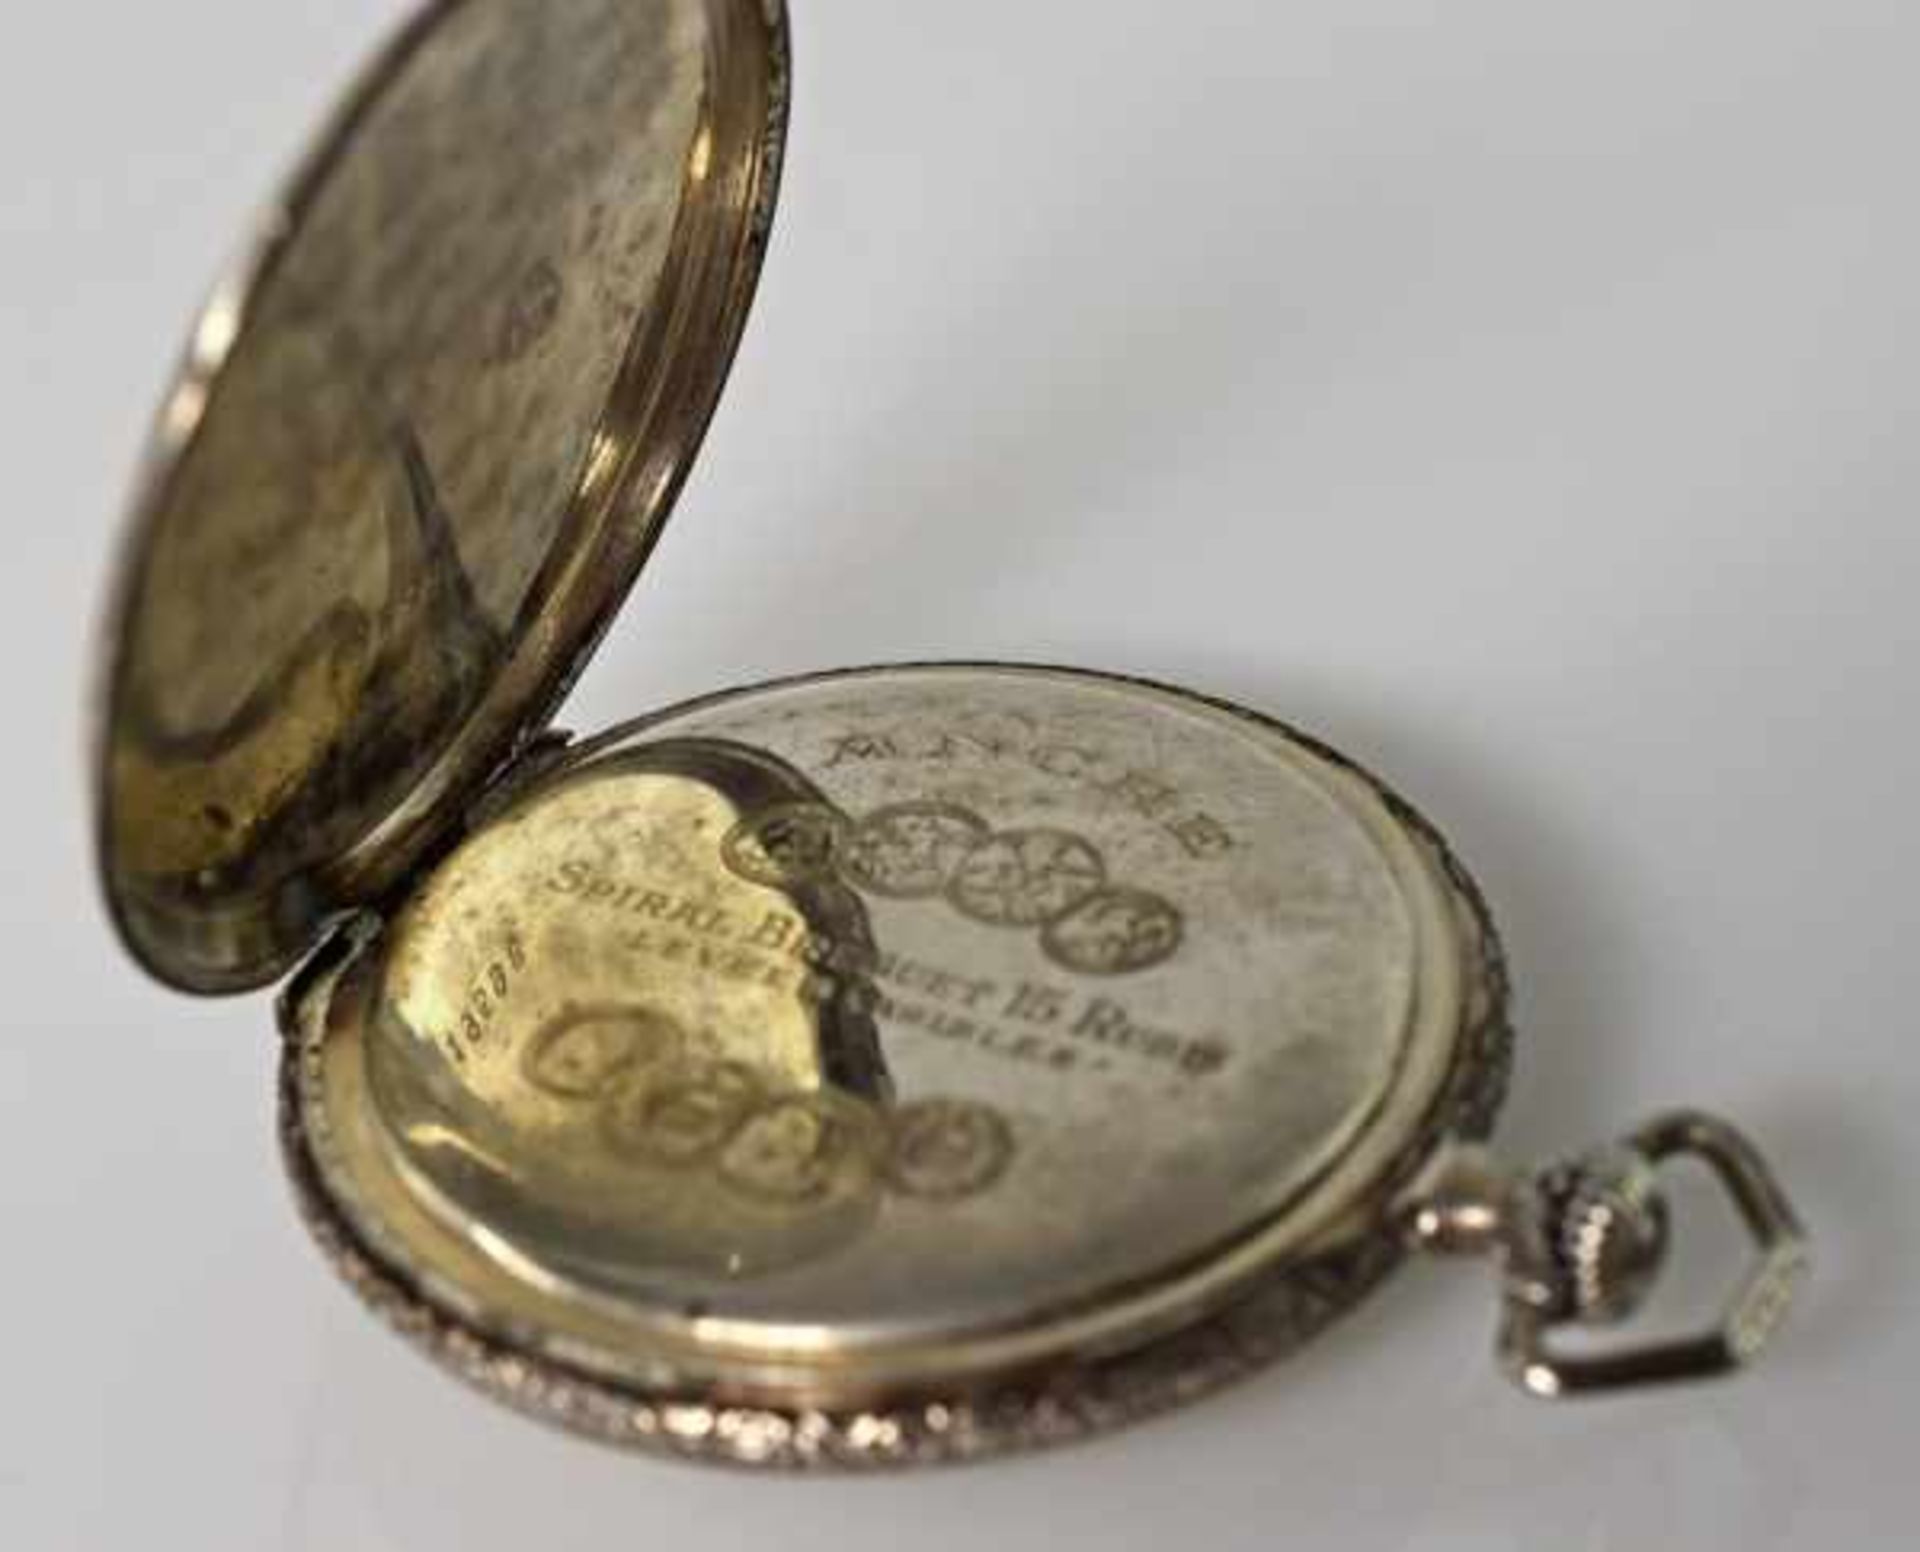 TASCHENUHR Chronomètre Prima, verziertes Silbergehäuse, goldfarbenes Ziffernblatt mit Rautendekor, - Bild 2 aus 2